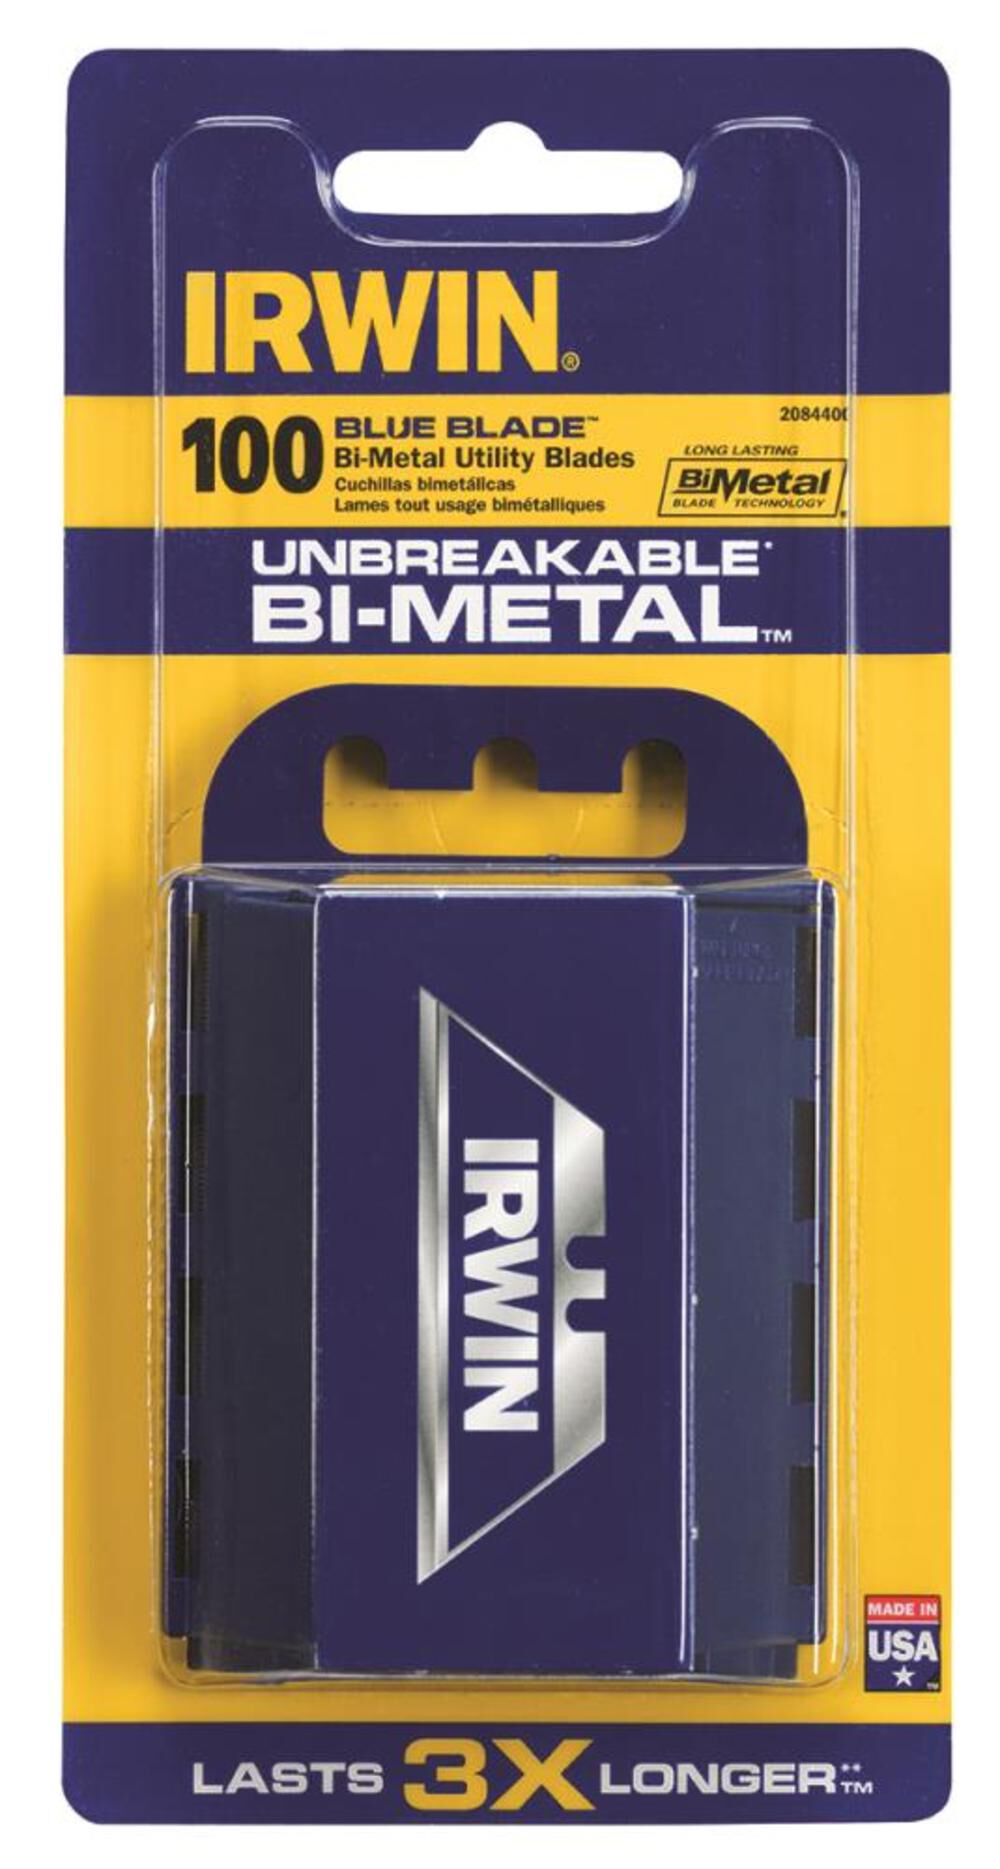 Bi-Metal Utility Knife Blades 100 pk. 2084400